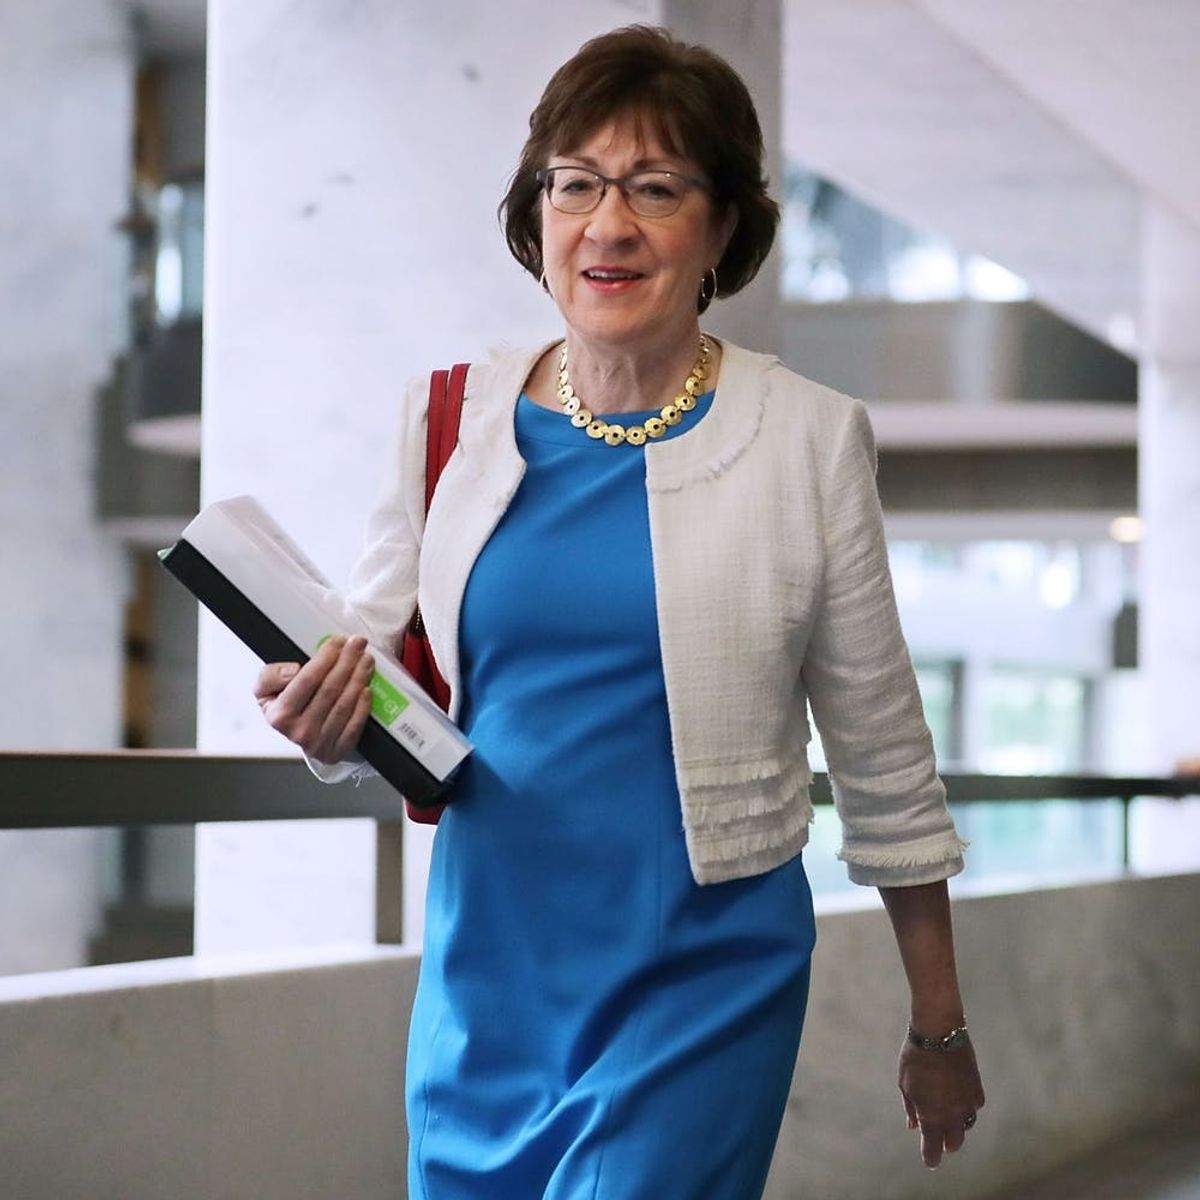 Senator Susan Collins Has Shut Down the GOP’s Health Care Plans Once Again